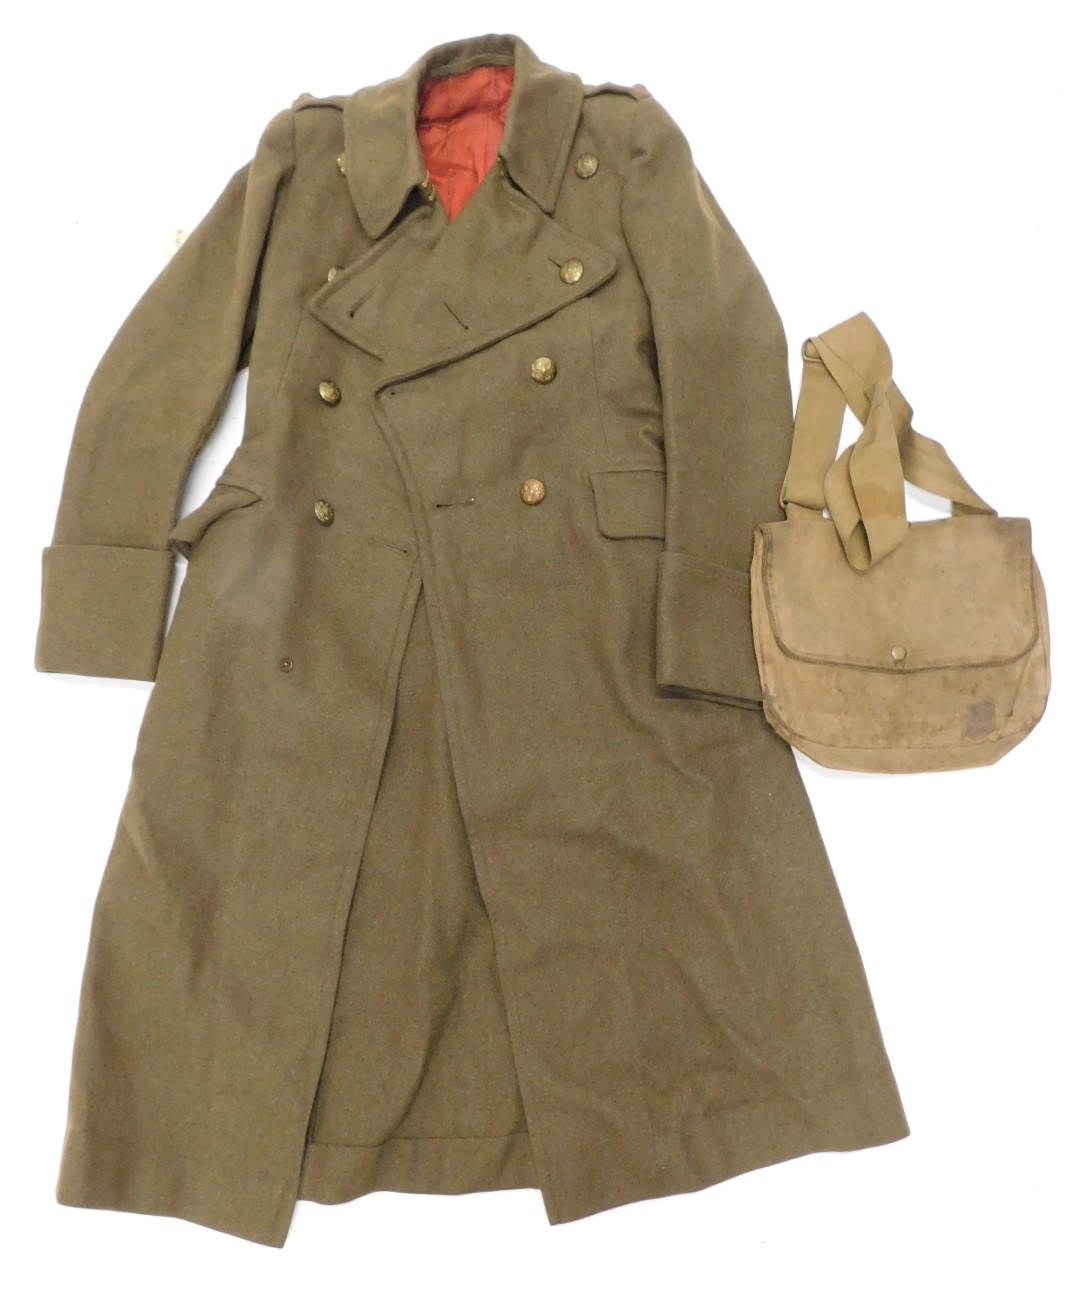 A 1940s ATS coat and bag.